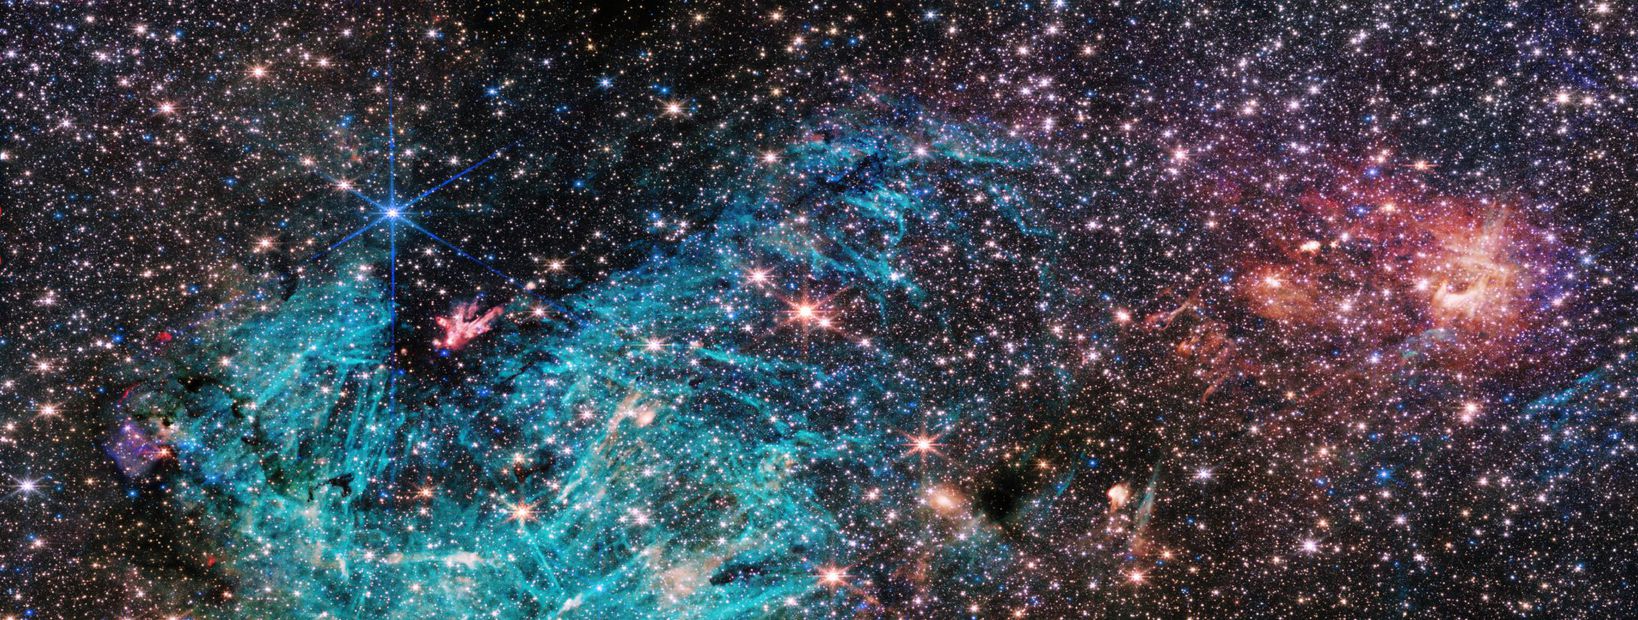 Foto del centro de la Vía Láctea. Foto: X @NASAWebb